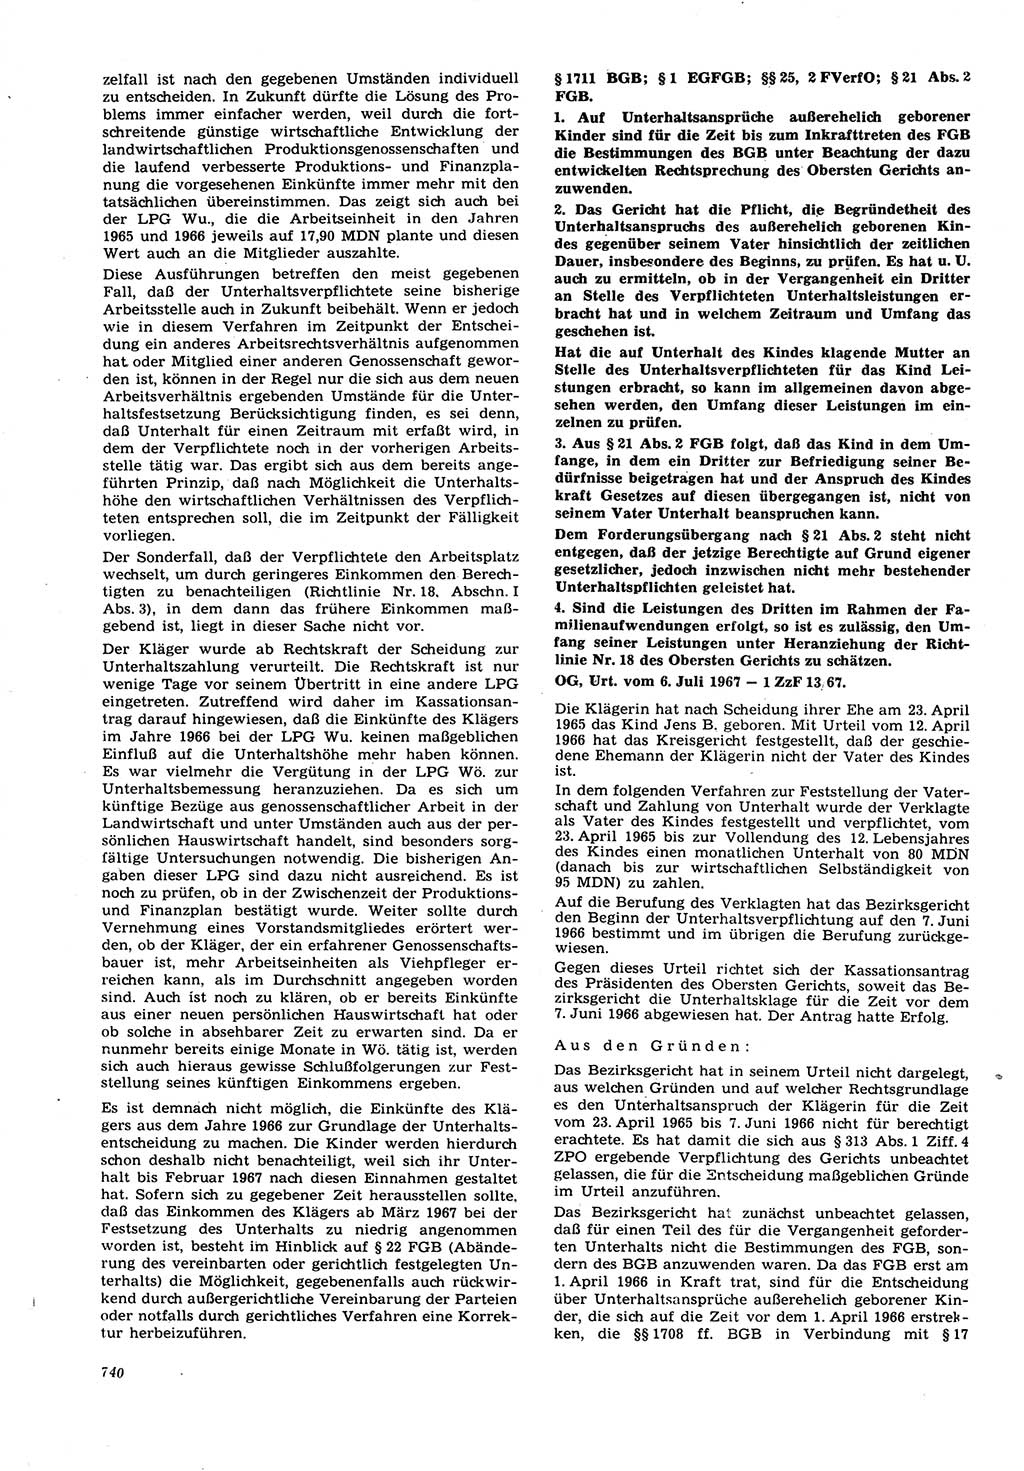 Neue Justiz (NJ), Zeitschrift für Recht und Rechtswissenschaft [Deutsche Demokratische Republik (DDR)], 21. Jahrgang 1967, Seite 740 (NJ DDR 1967, S. 740)